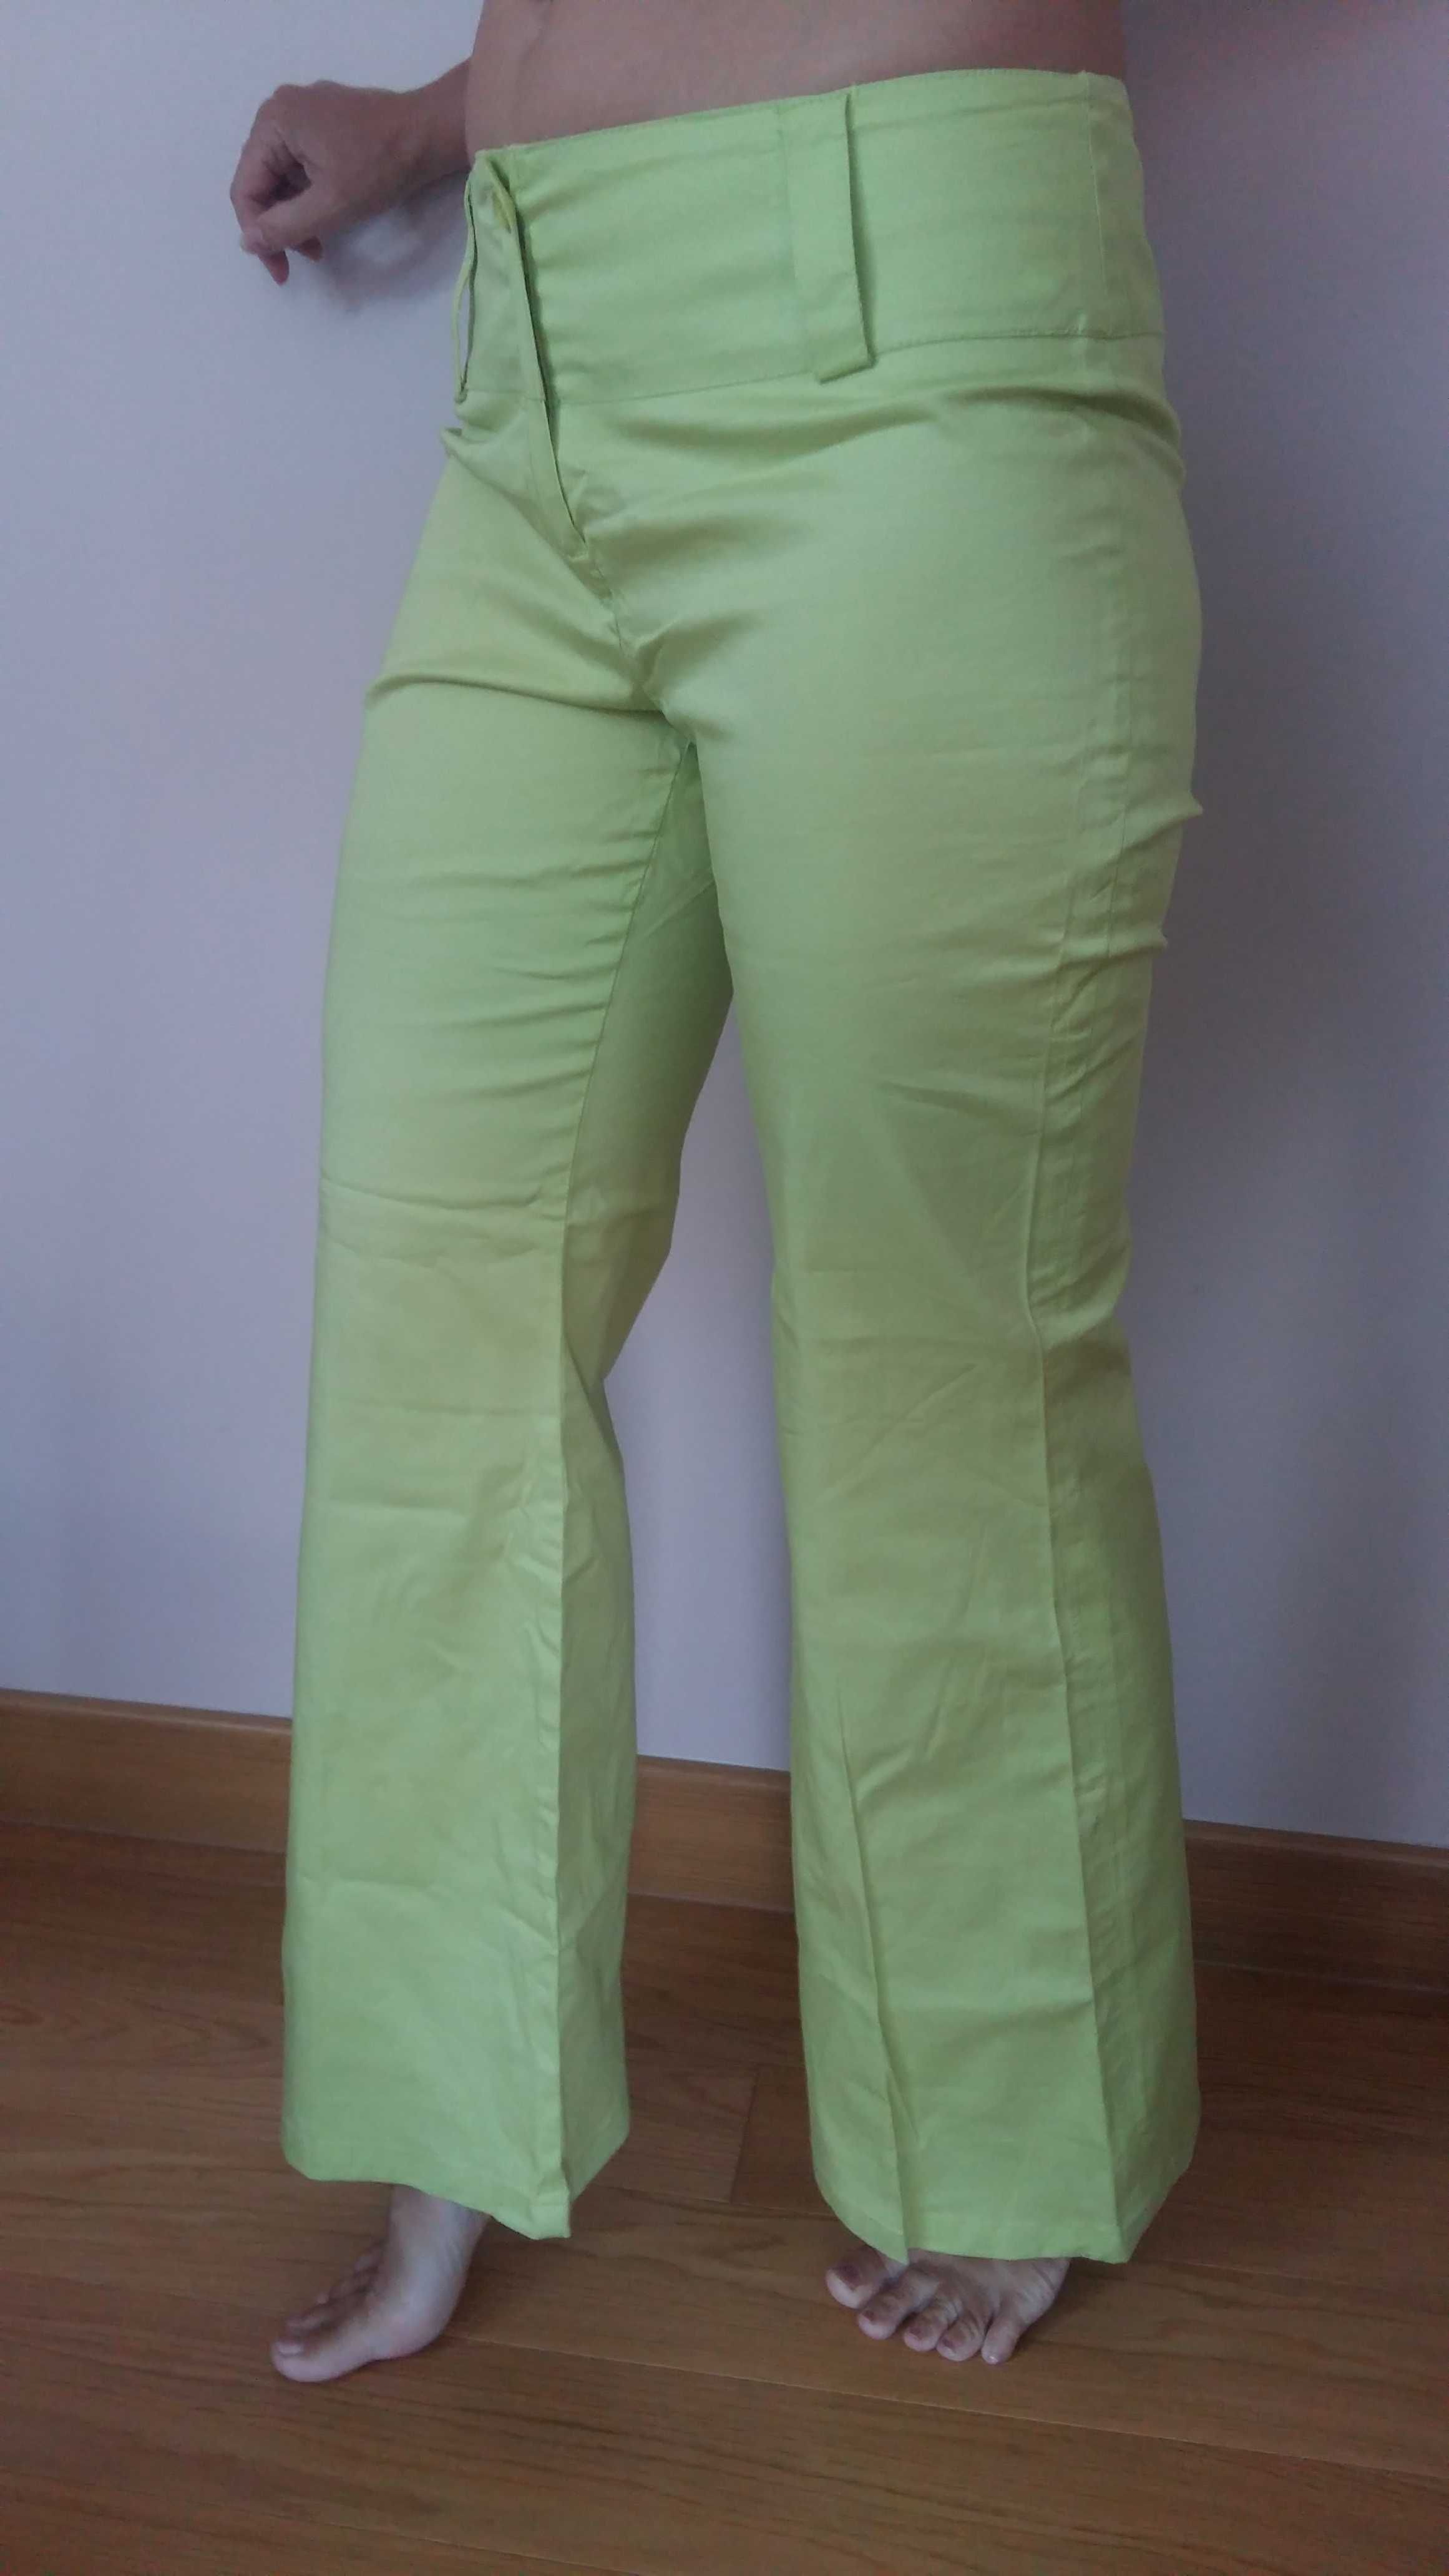 Spodnie rozm.M/L Terranowa szeroka nogawka bawełna zieleń wiosna/lato